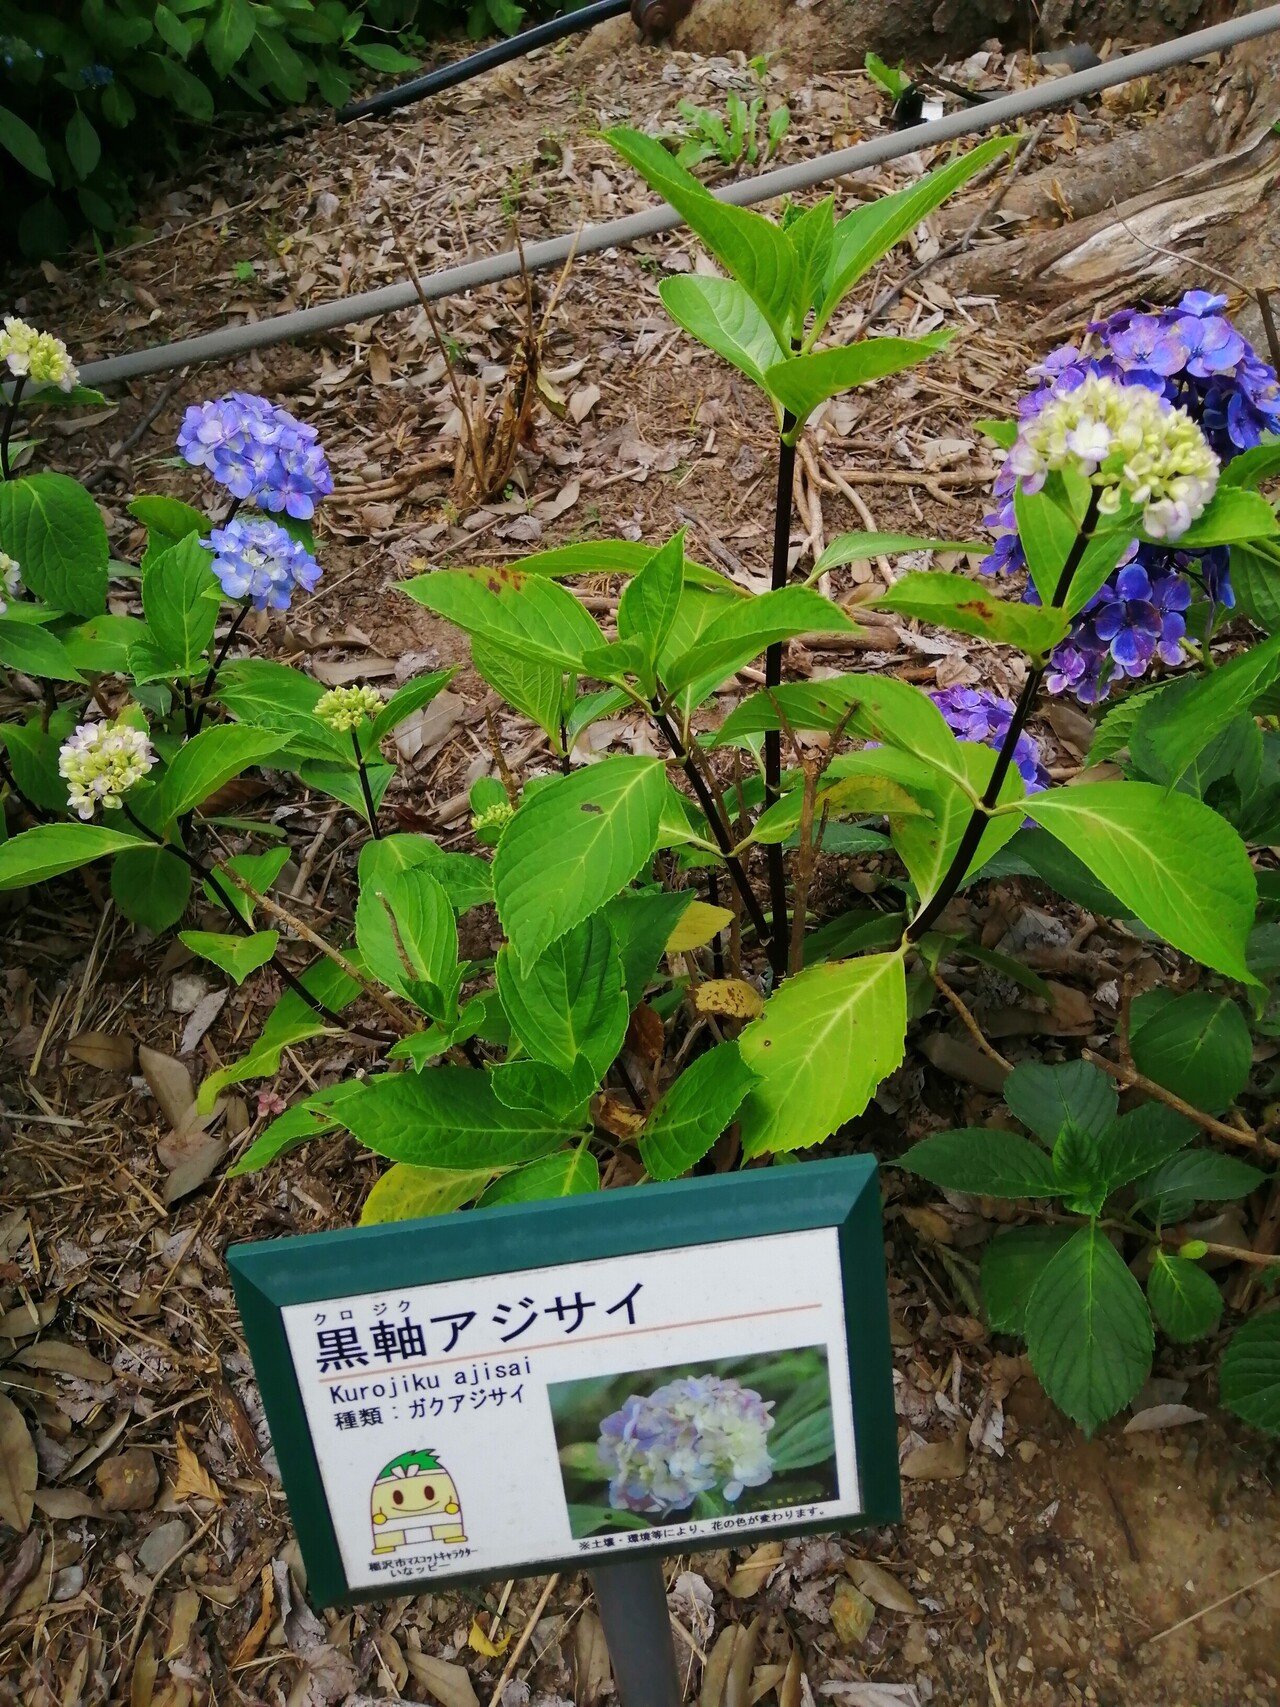 紫陽花の人気スポット 大塚性海寺歴史公園 に行ってきました Ad Publicity Note